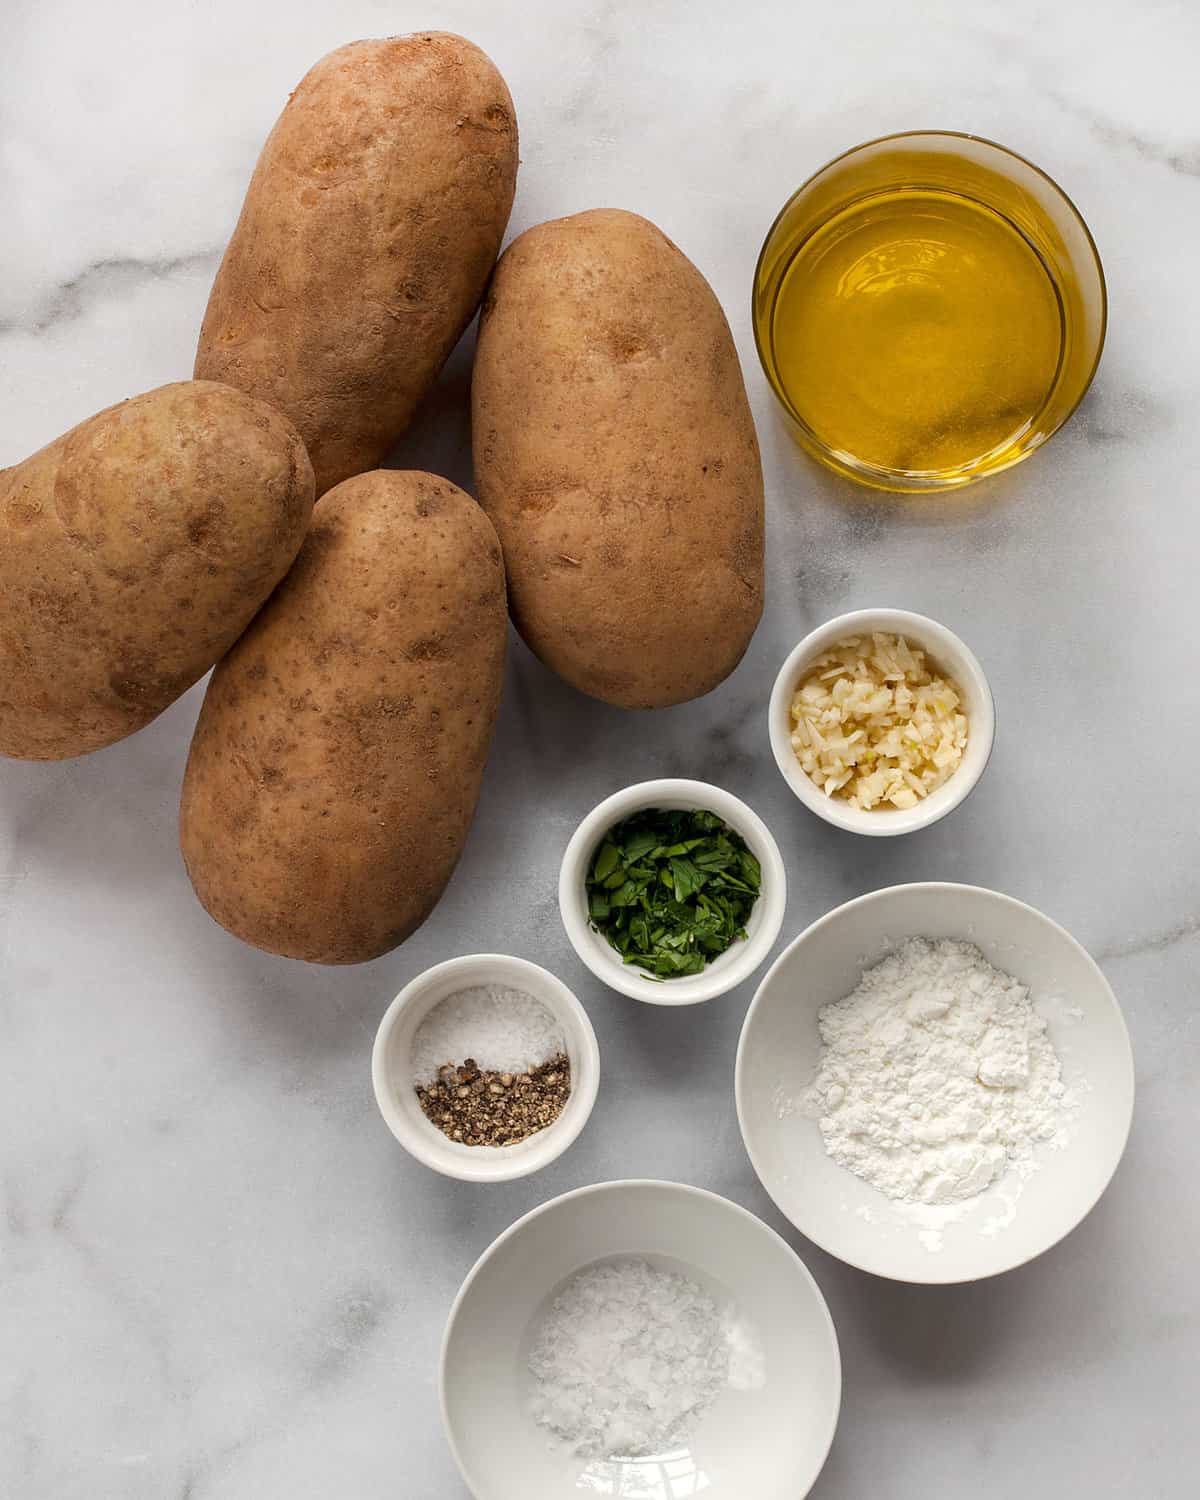 Ingredients including potatoes, oil, seasonings, cornstarch, garlic and parsley.